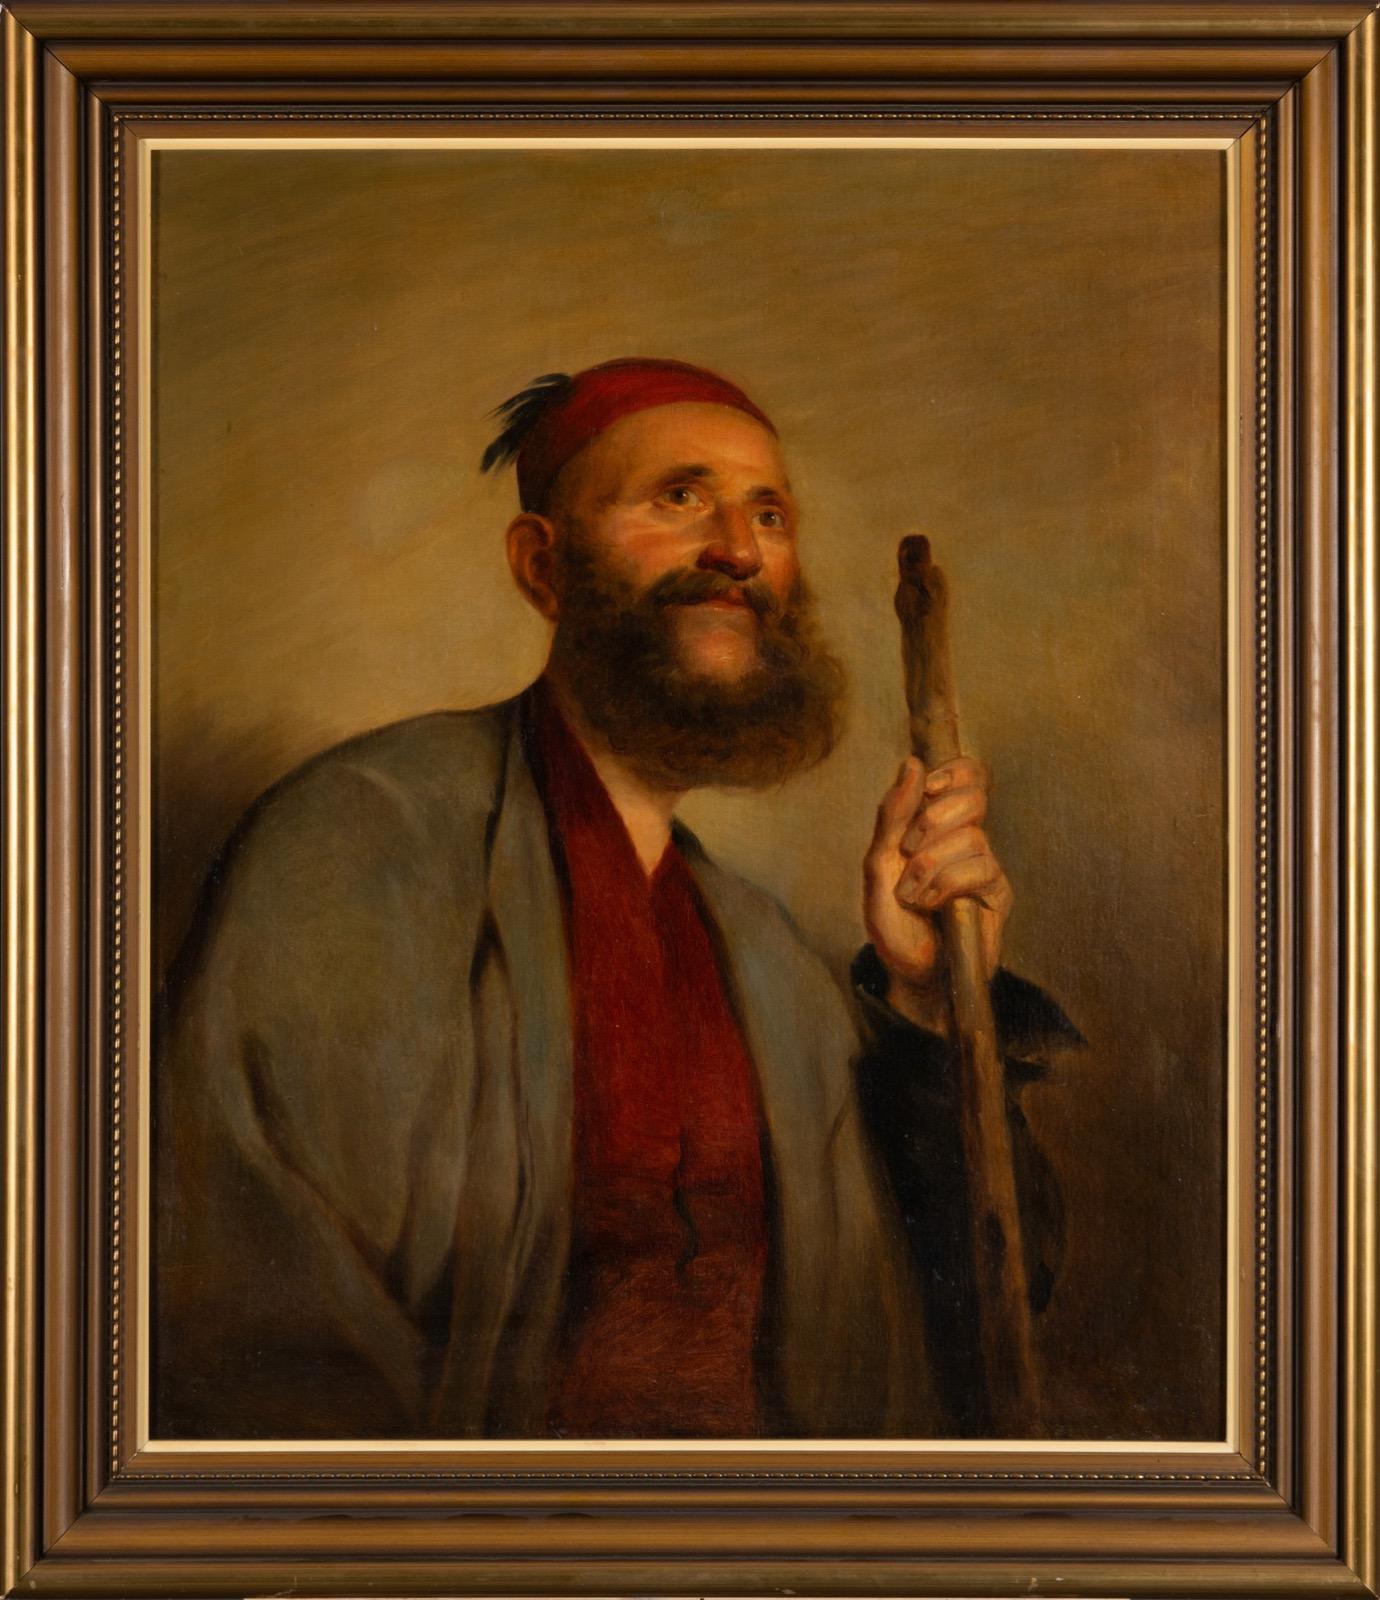 Beau portrait d'un homme barbu oriental, portant un fez et tenant une canne, seconde moitié du 19e siècle. Huile sur toile. Relié. Artiste inconnu mais probablement suédois. 

La chéchia est une coiffure en feutre ayant la forme d'un chapeau court,